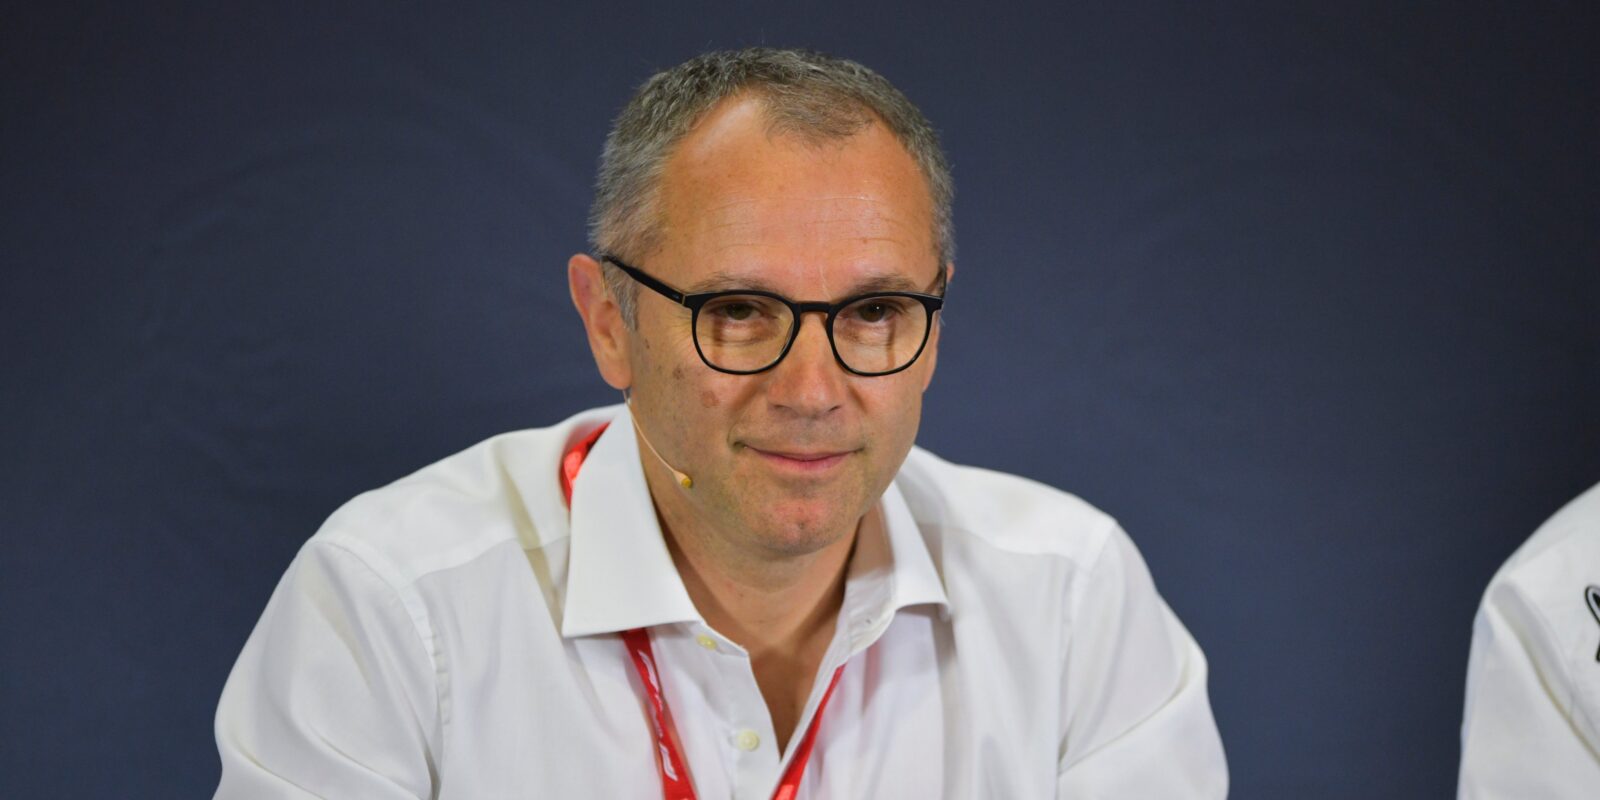 Potvrzeno: Stefano Domenicali se stane šéfem F1